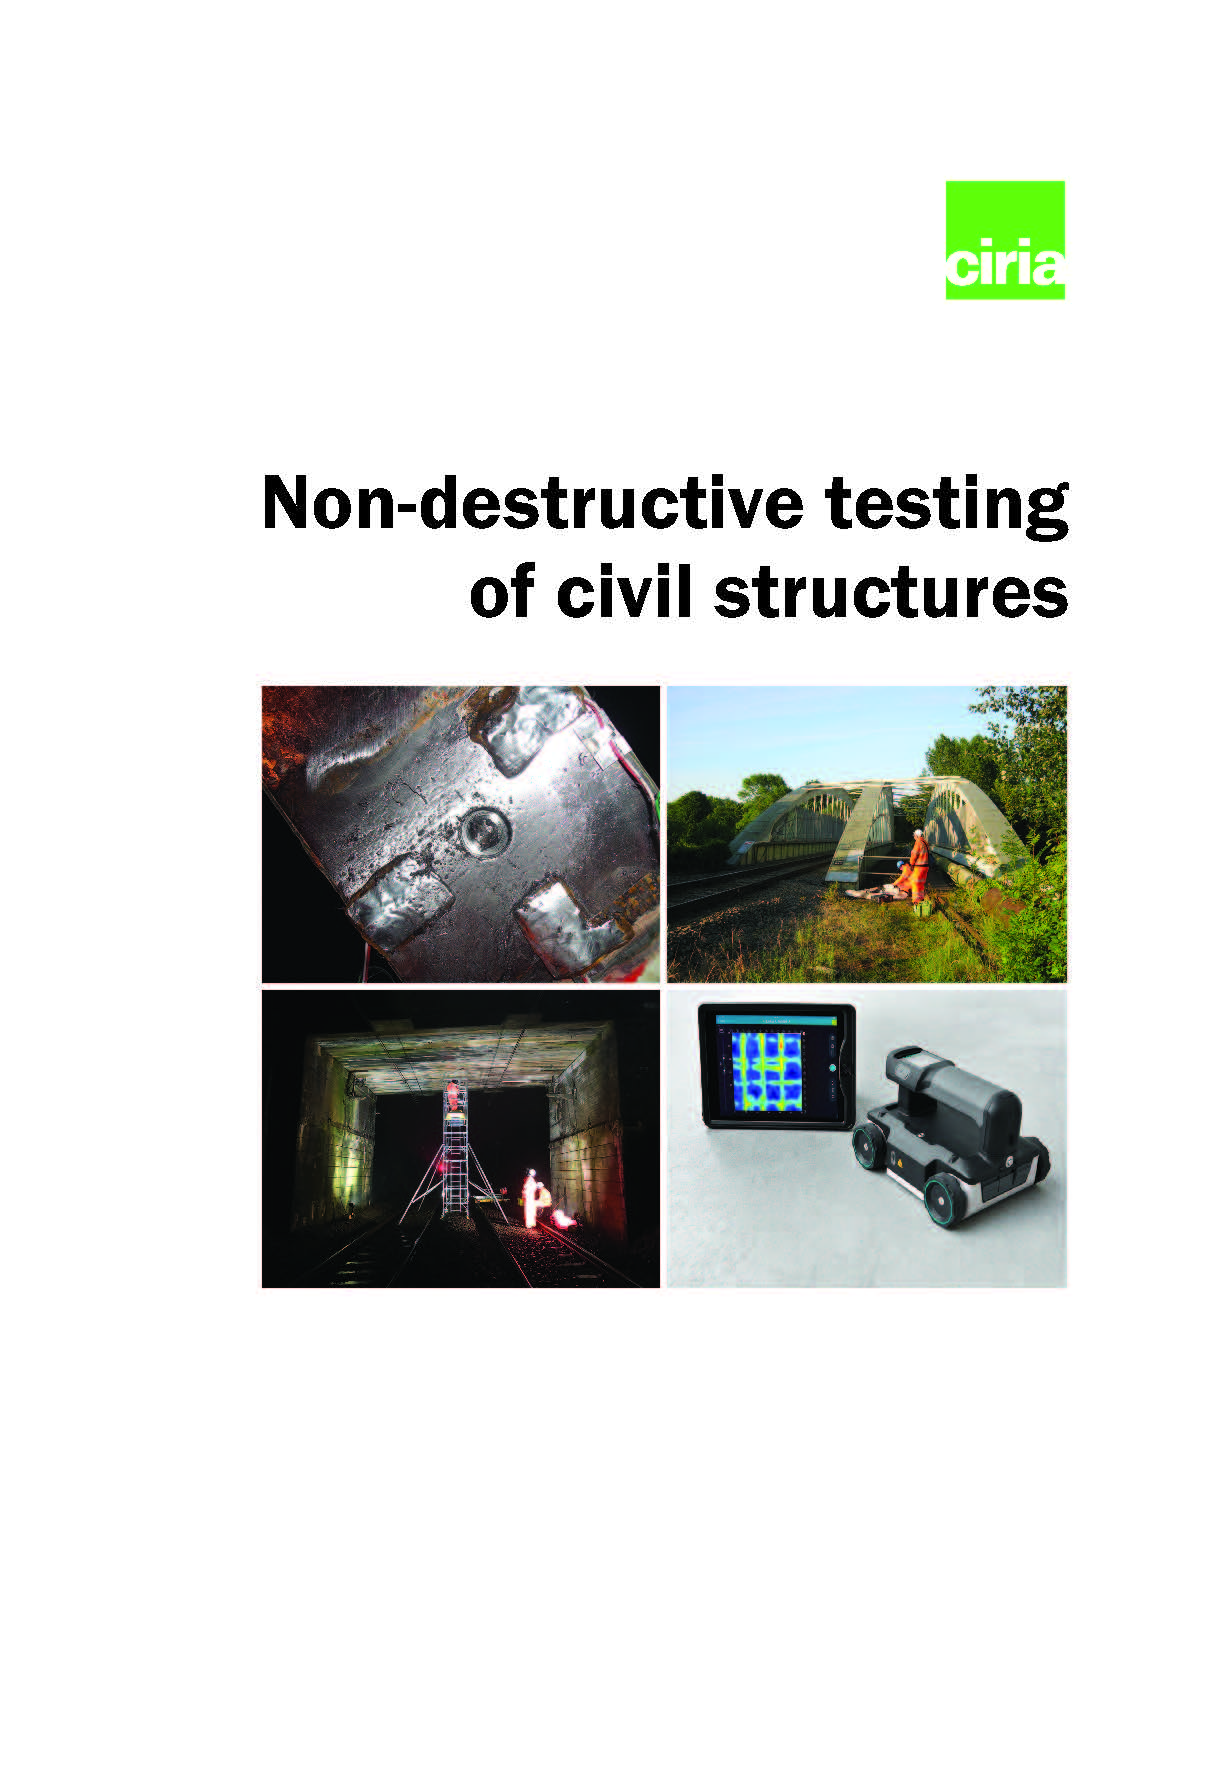 Non-destructive testing of civil structures